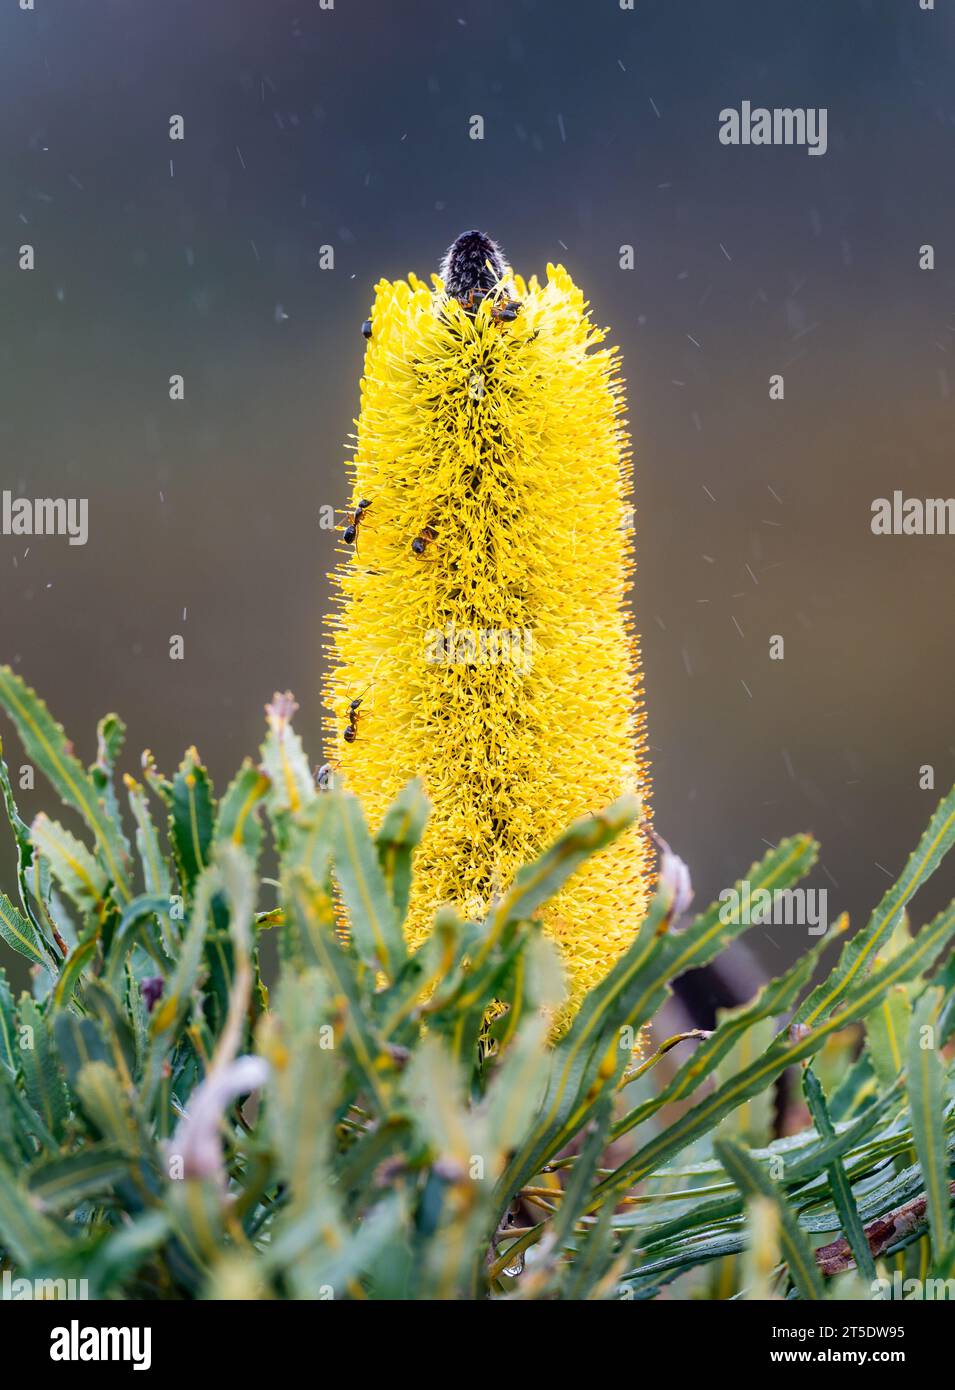 Les fleurs jaunes de Candlestick Banksia (Banksia attenuata) attirent les fourmis et autres insectes. Australie. Banque D'Images